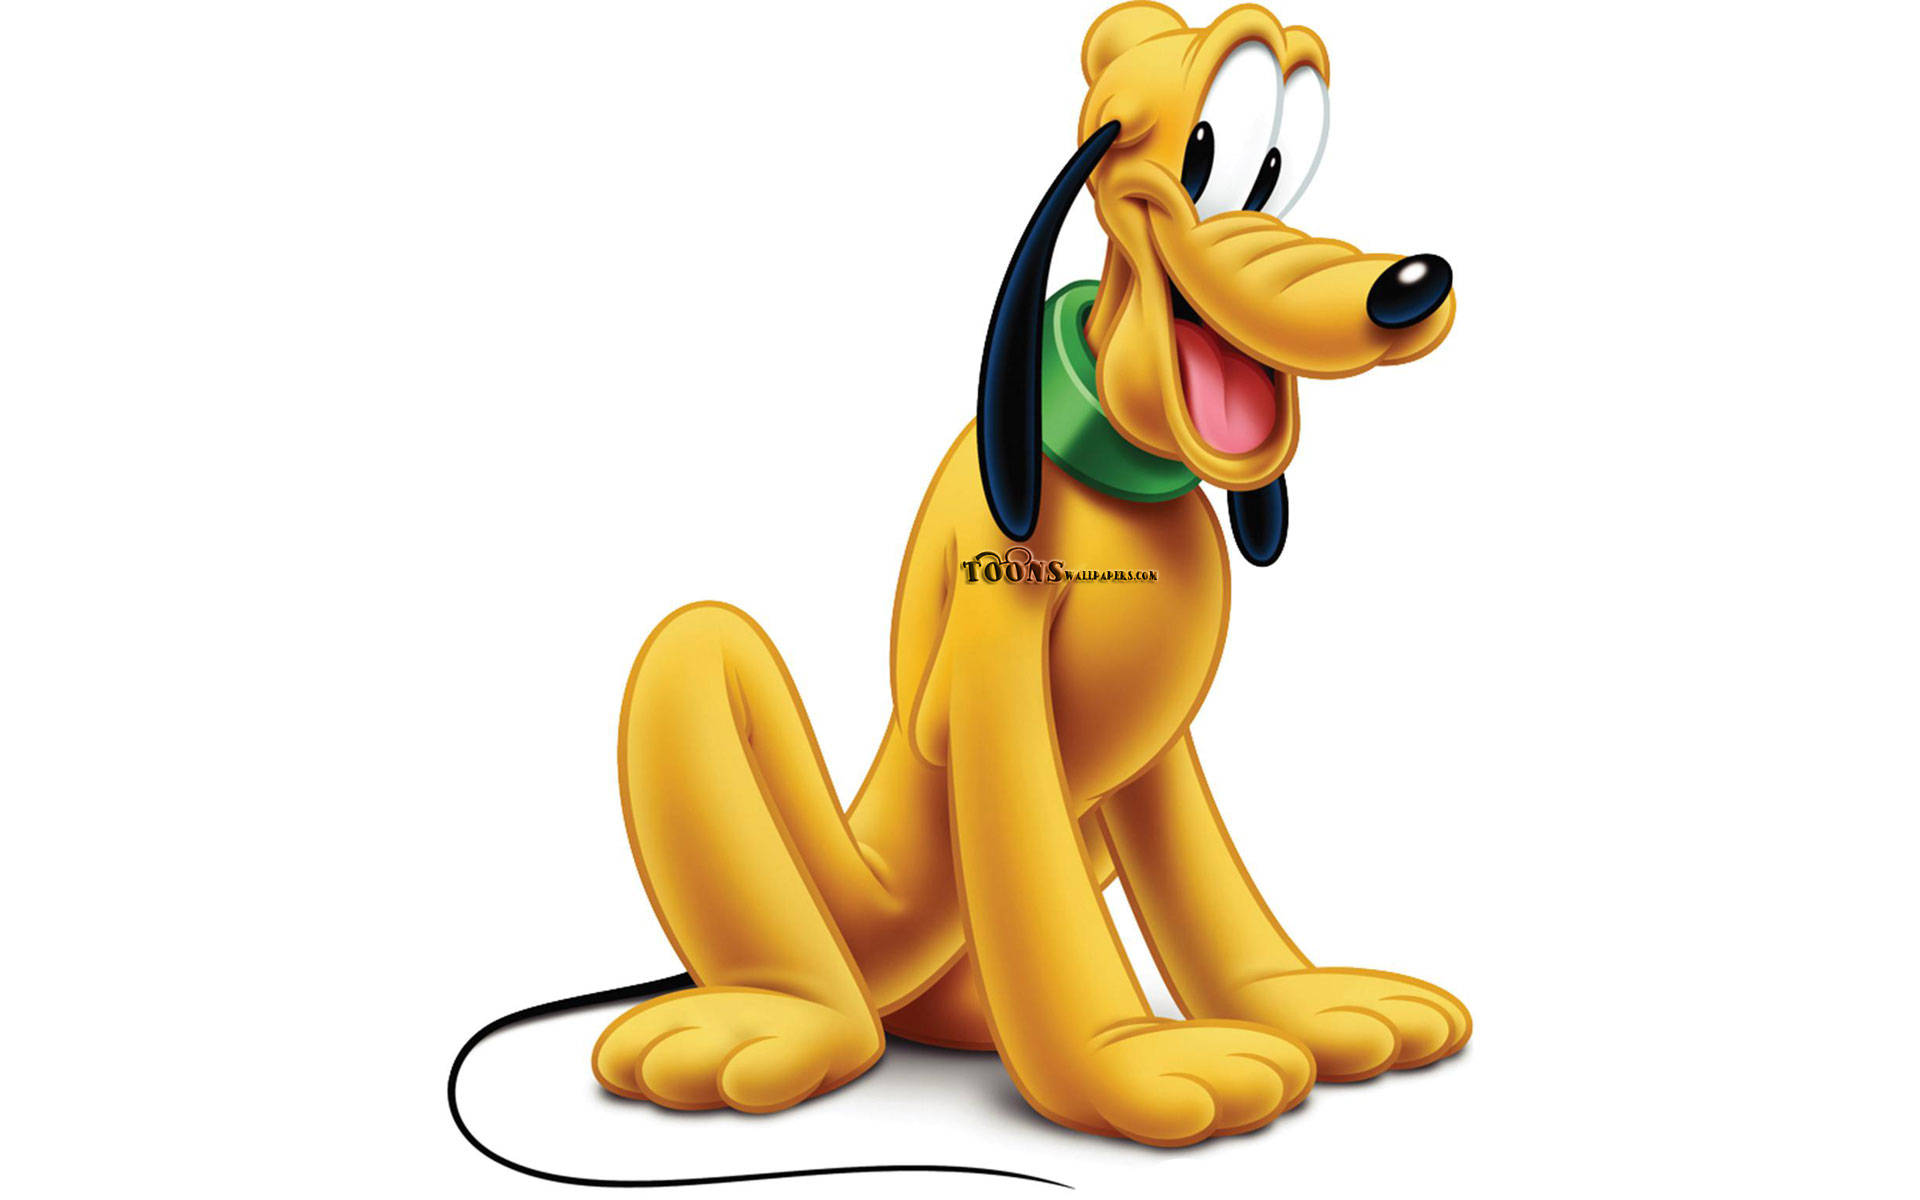 Happy Disney Pluto Wallpaper